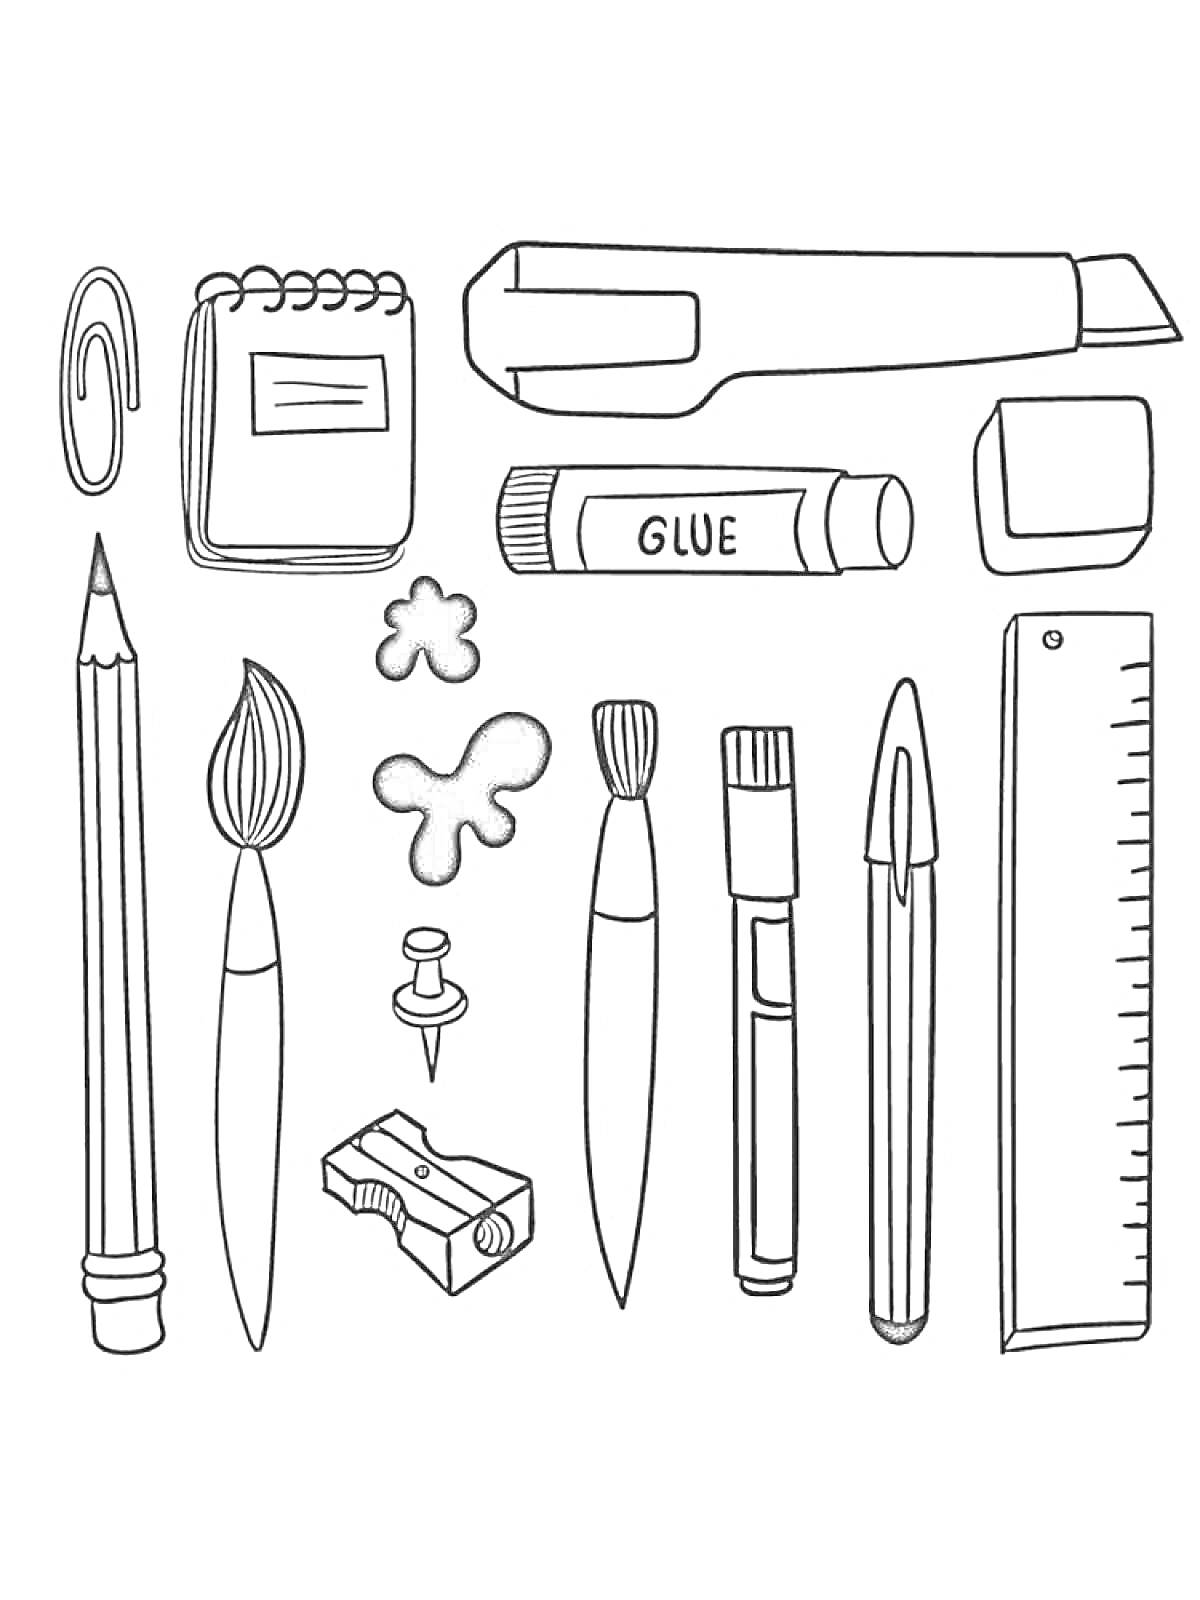 Школьные принадлежности с канцелярским ножом, блокнотом, скрепкой, карандашом, кисточками, булавкой, точилкой, красочными пятнами, клеем, ластиком, линейкой и ручкой